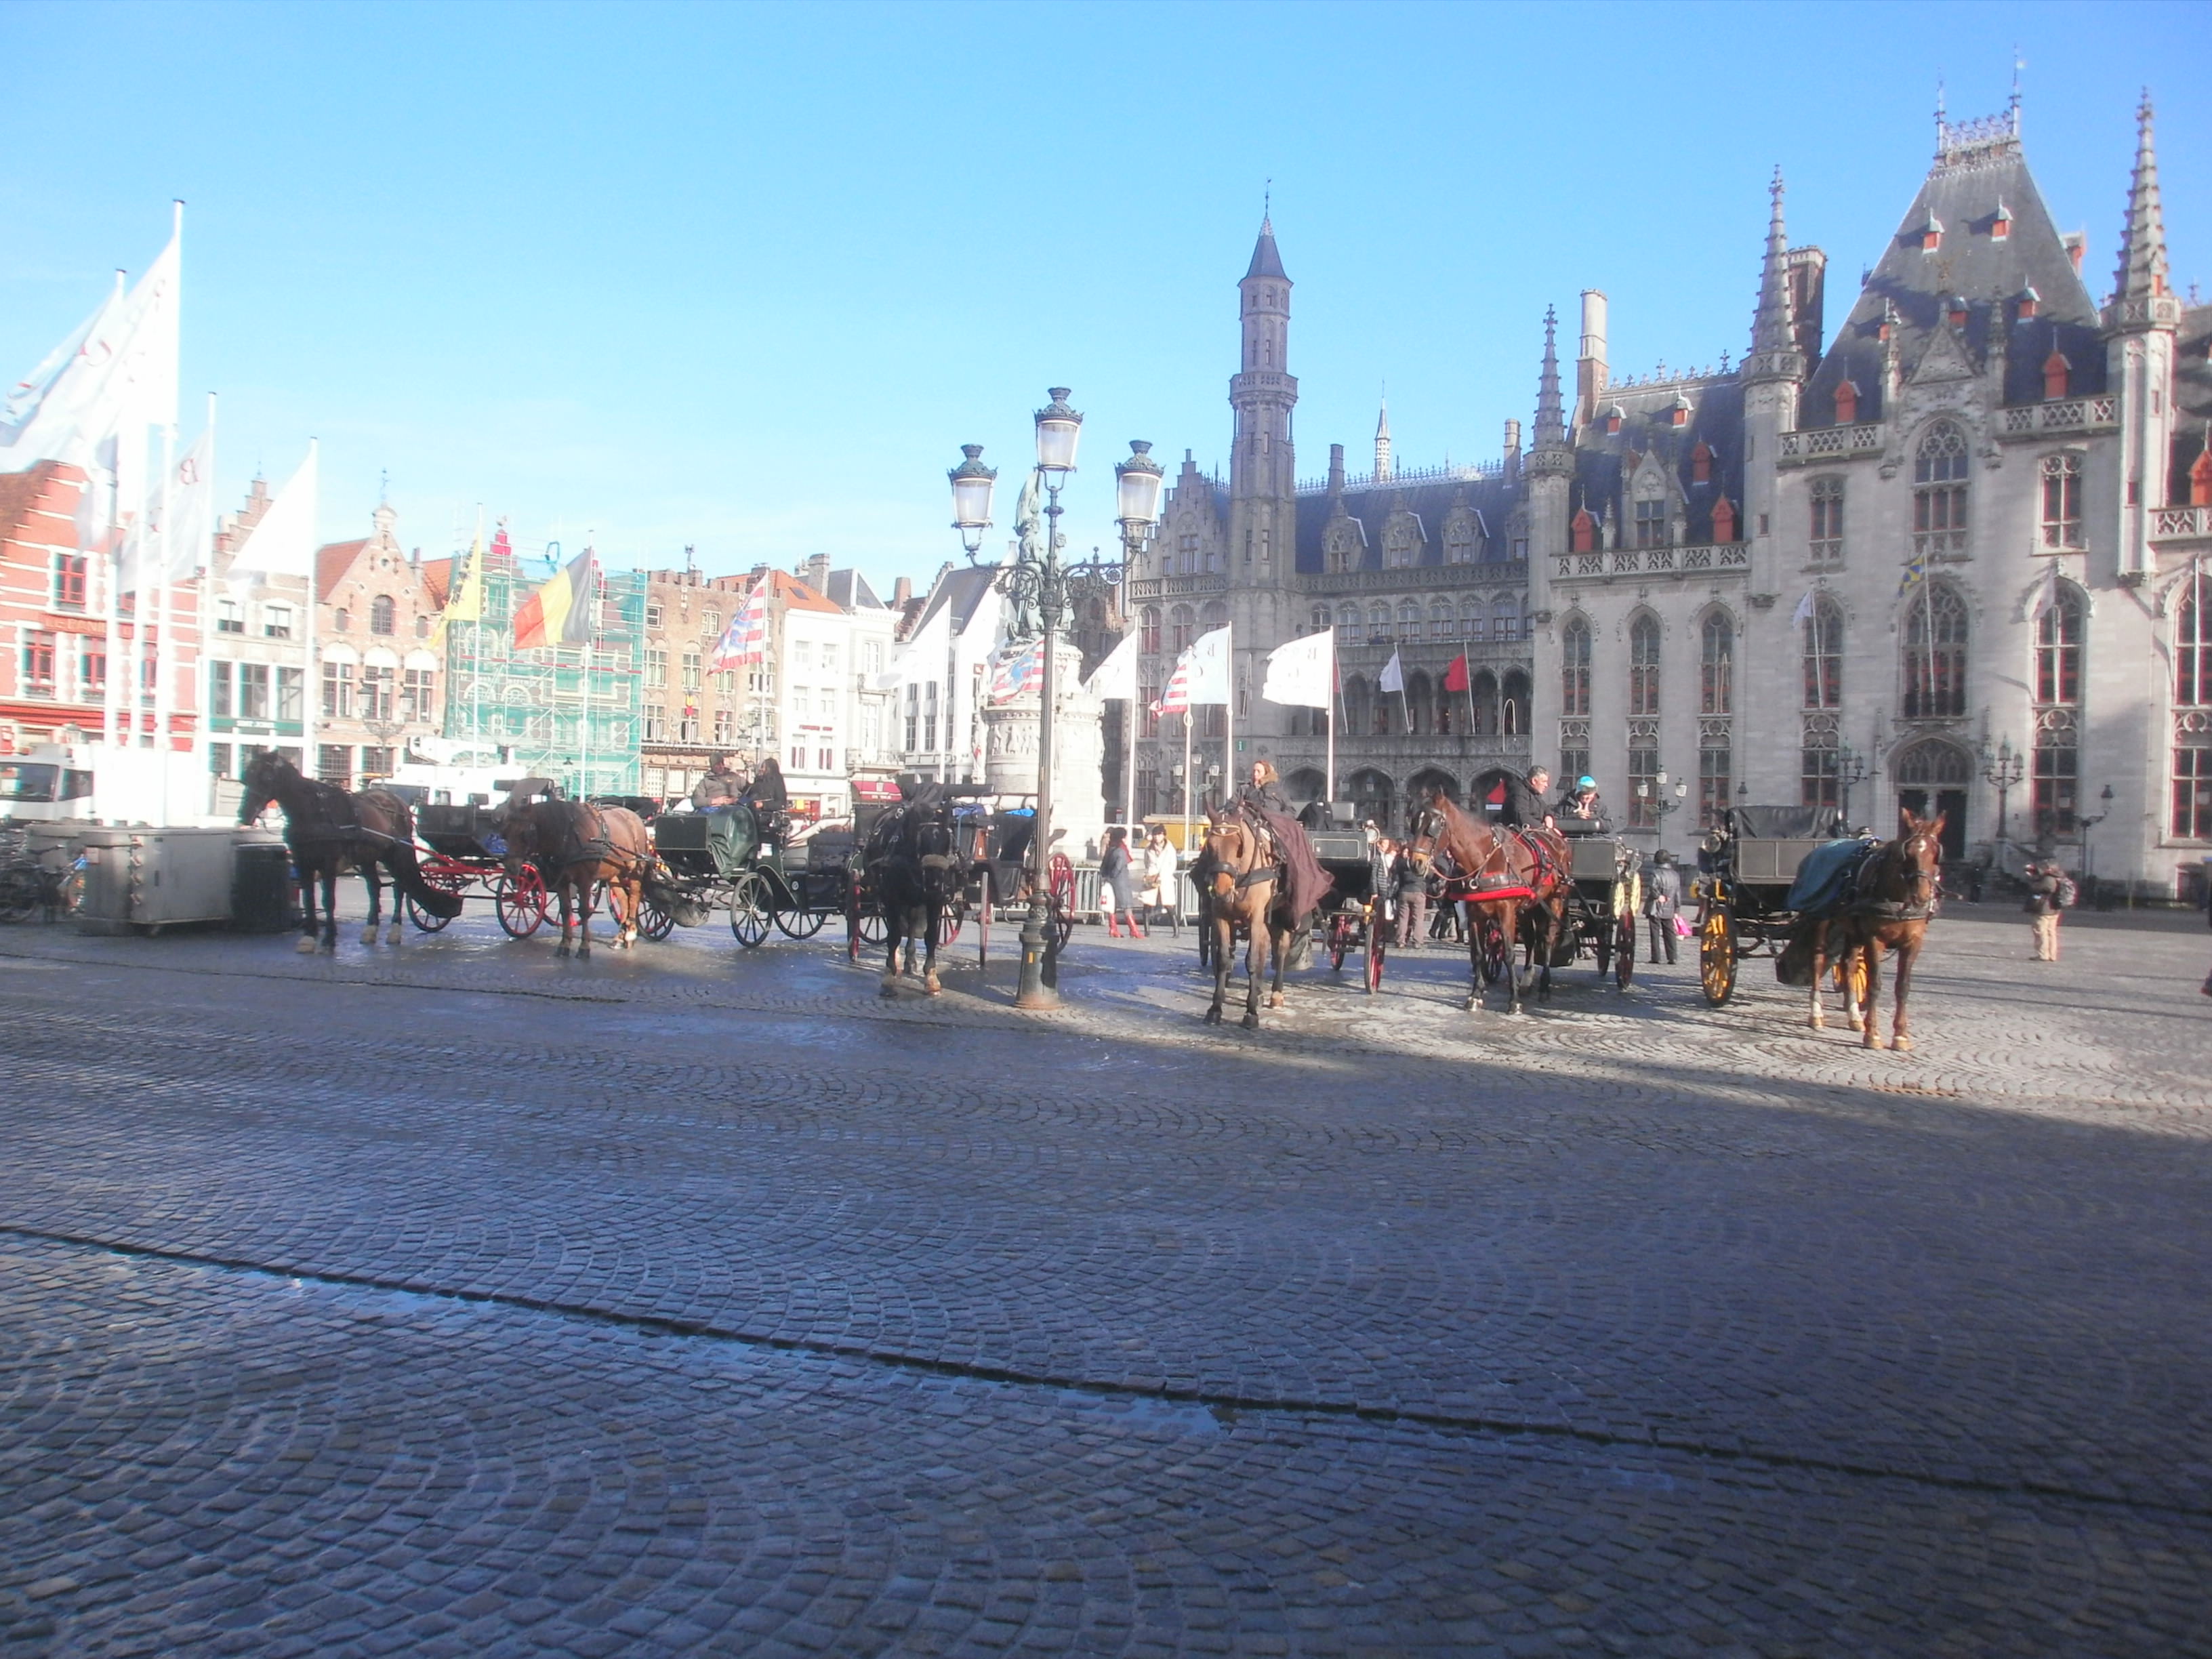 Grote Markt - Brugge